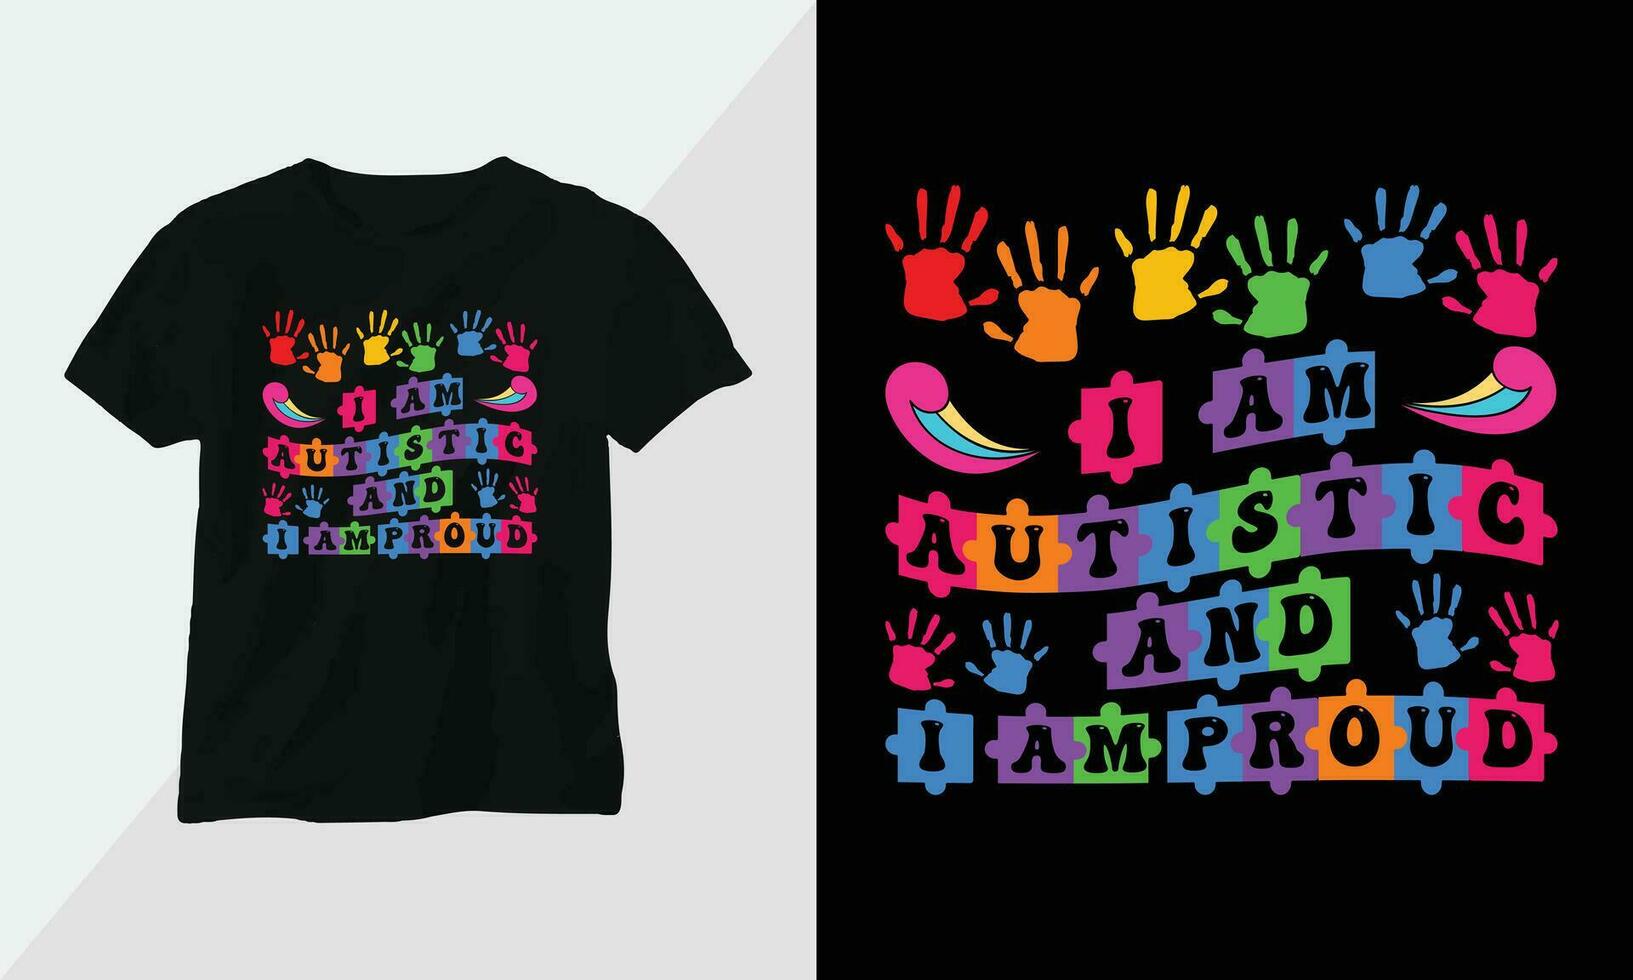 autismo camiseta Projeto conceito. todos desenhos estão colorida e criada usando fita, quebra-cabeças, amor, etc vetor